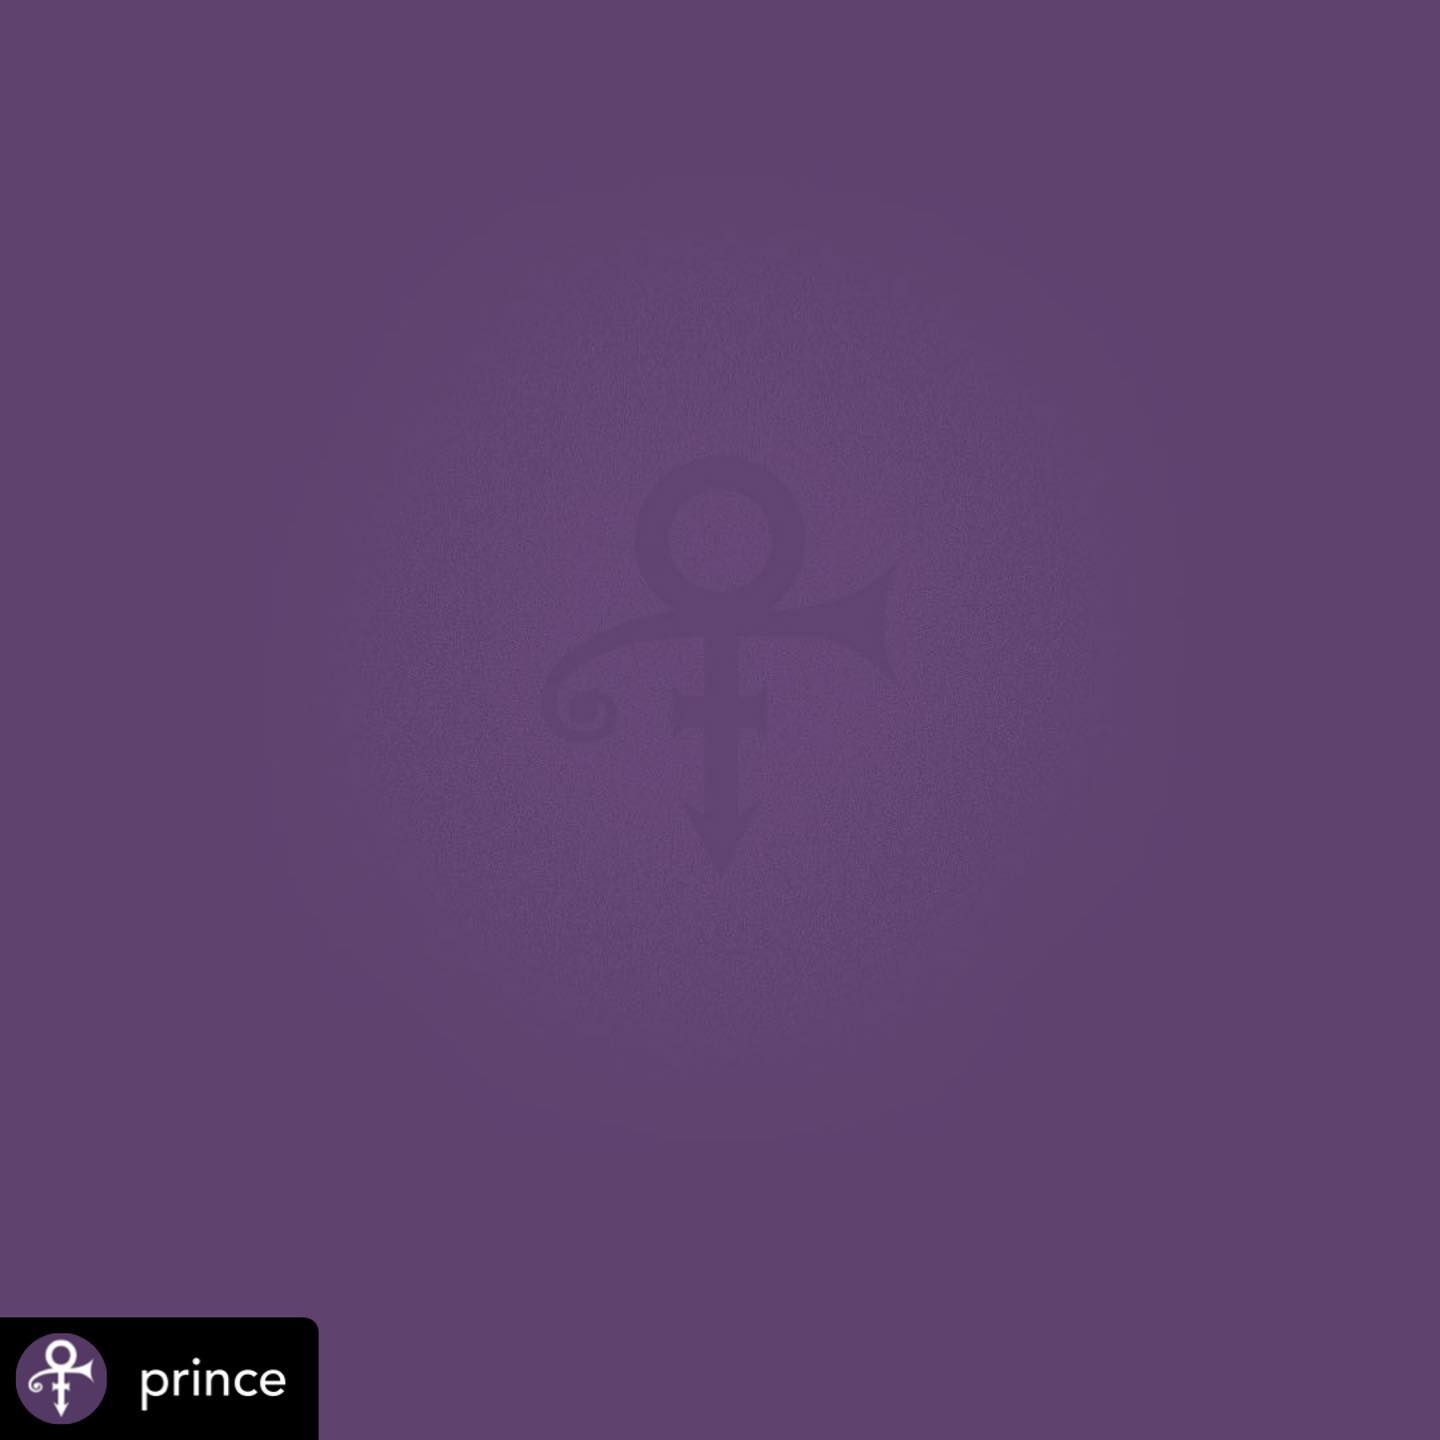 RIP @prince